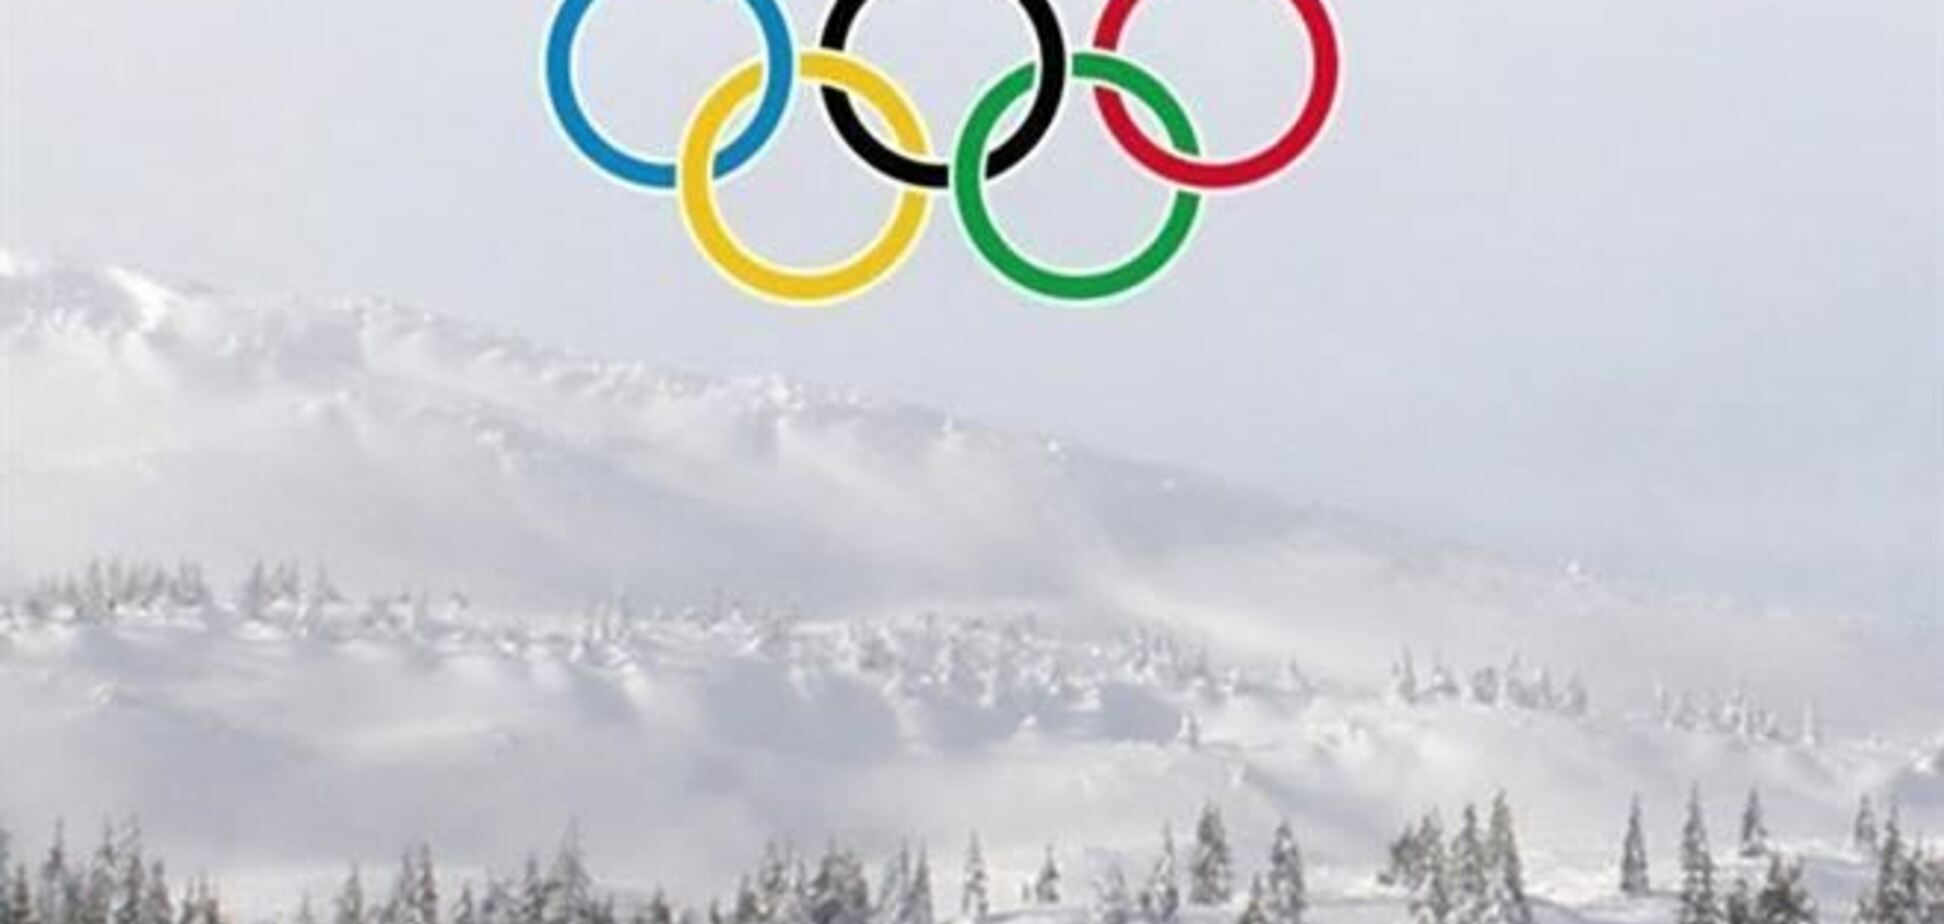 Подписана декларация о намерениях подать заявку Украины на проведение Олимпиады-2022